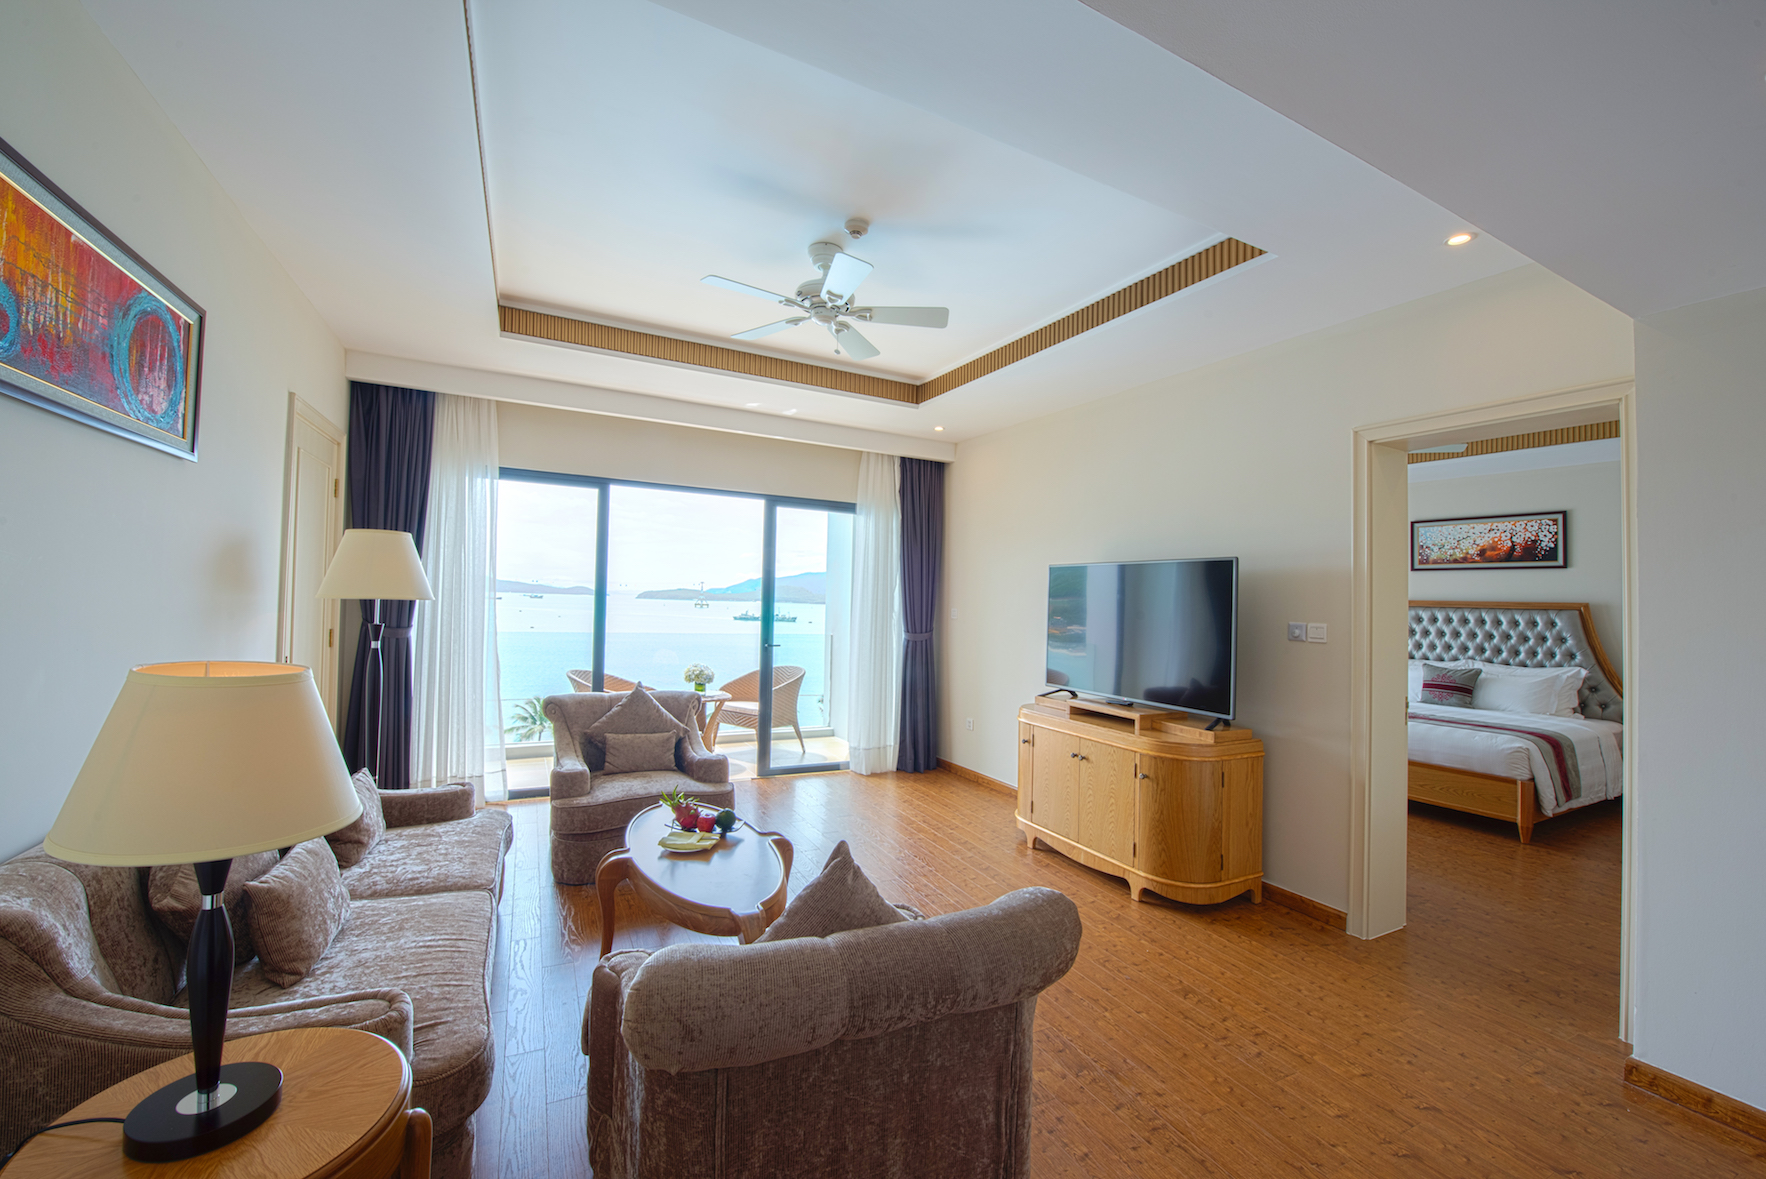 Vinpearl Resort & Spa Nha Trang Bay: tận hưởng kì nghỉ dưỡng 5*